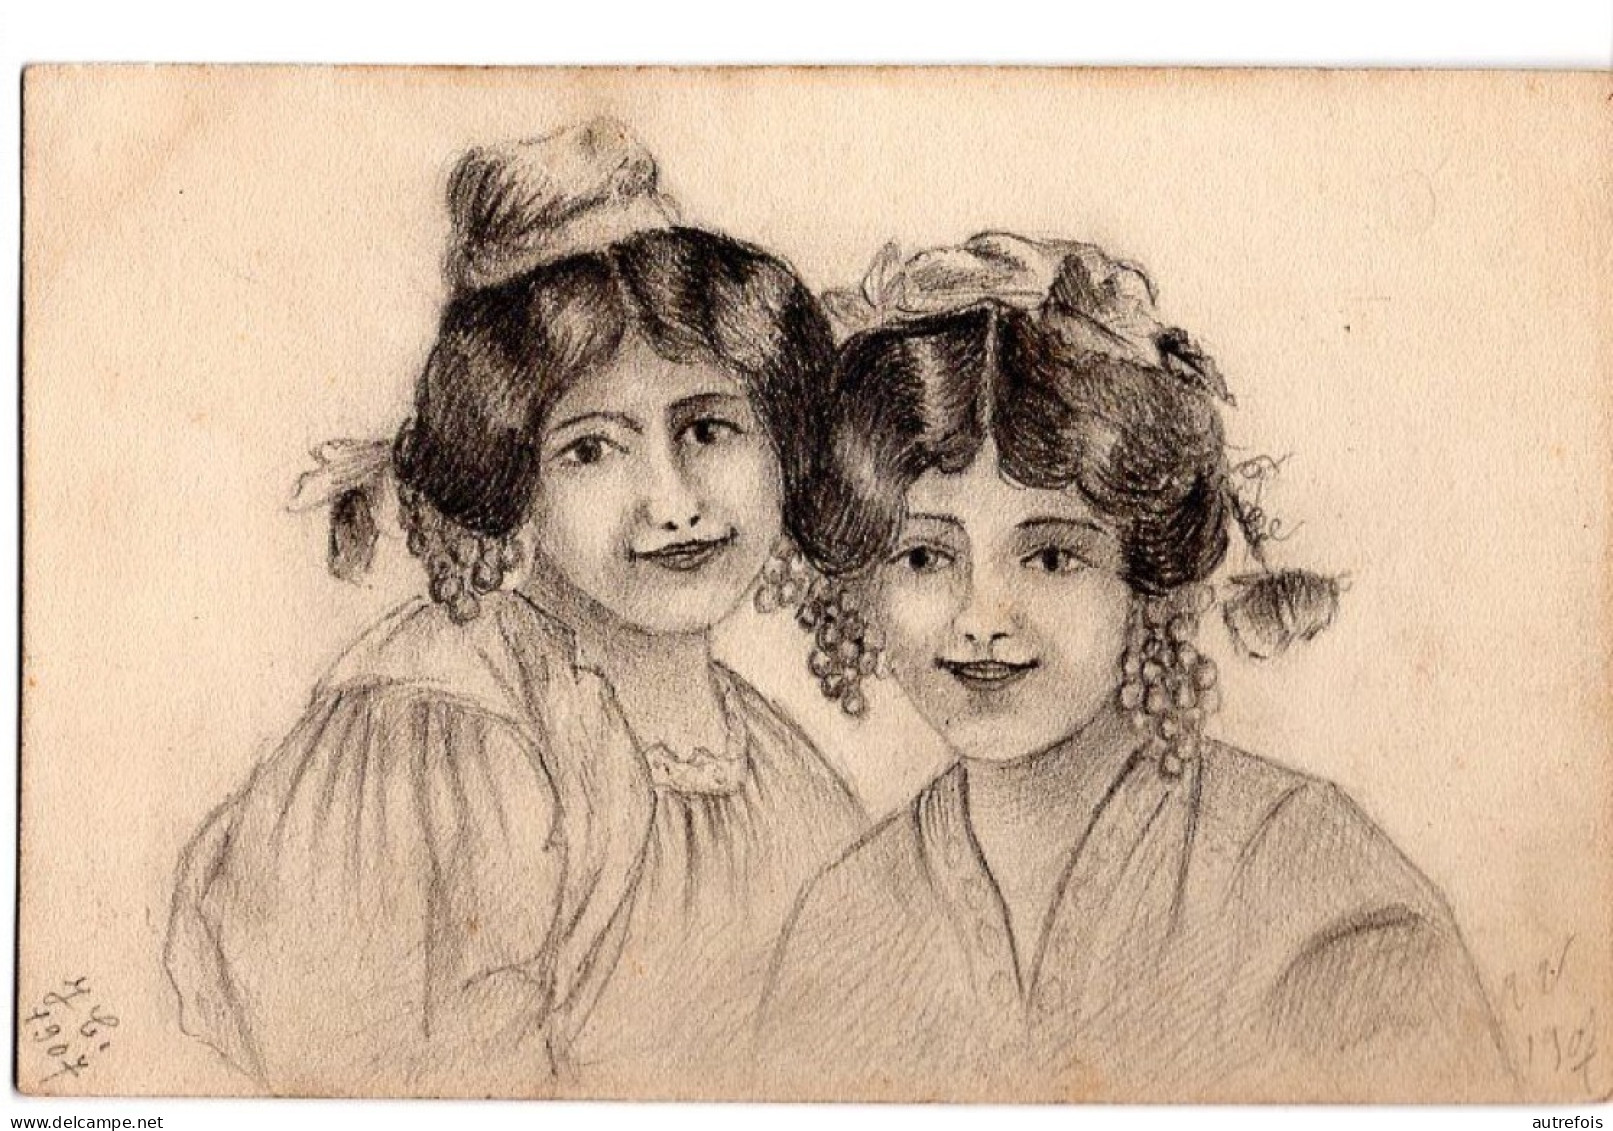 PORTRAITS DE JEUNES FILLE  -  DESSIN AU CRAYON SUR CARTE POSTALE - SIGNEE J C 1907 - Drawings